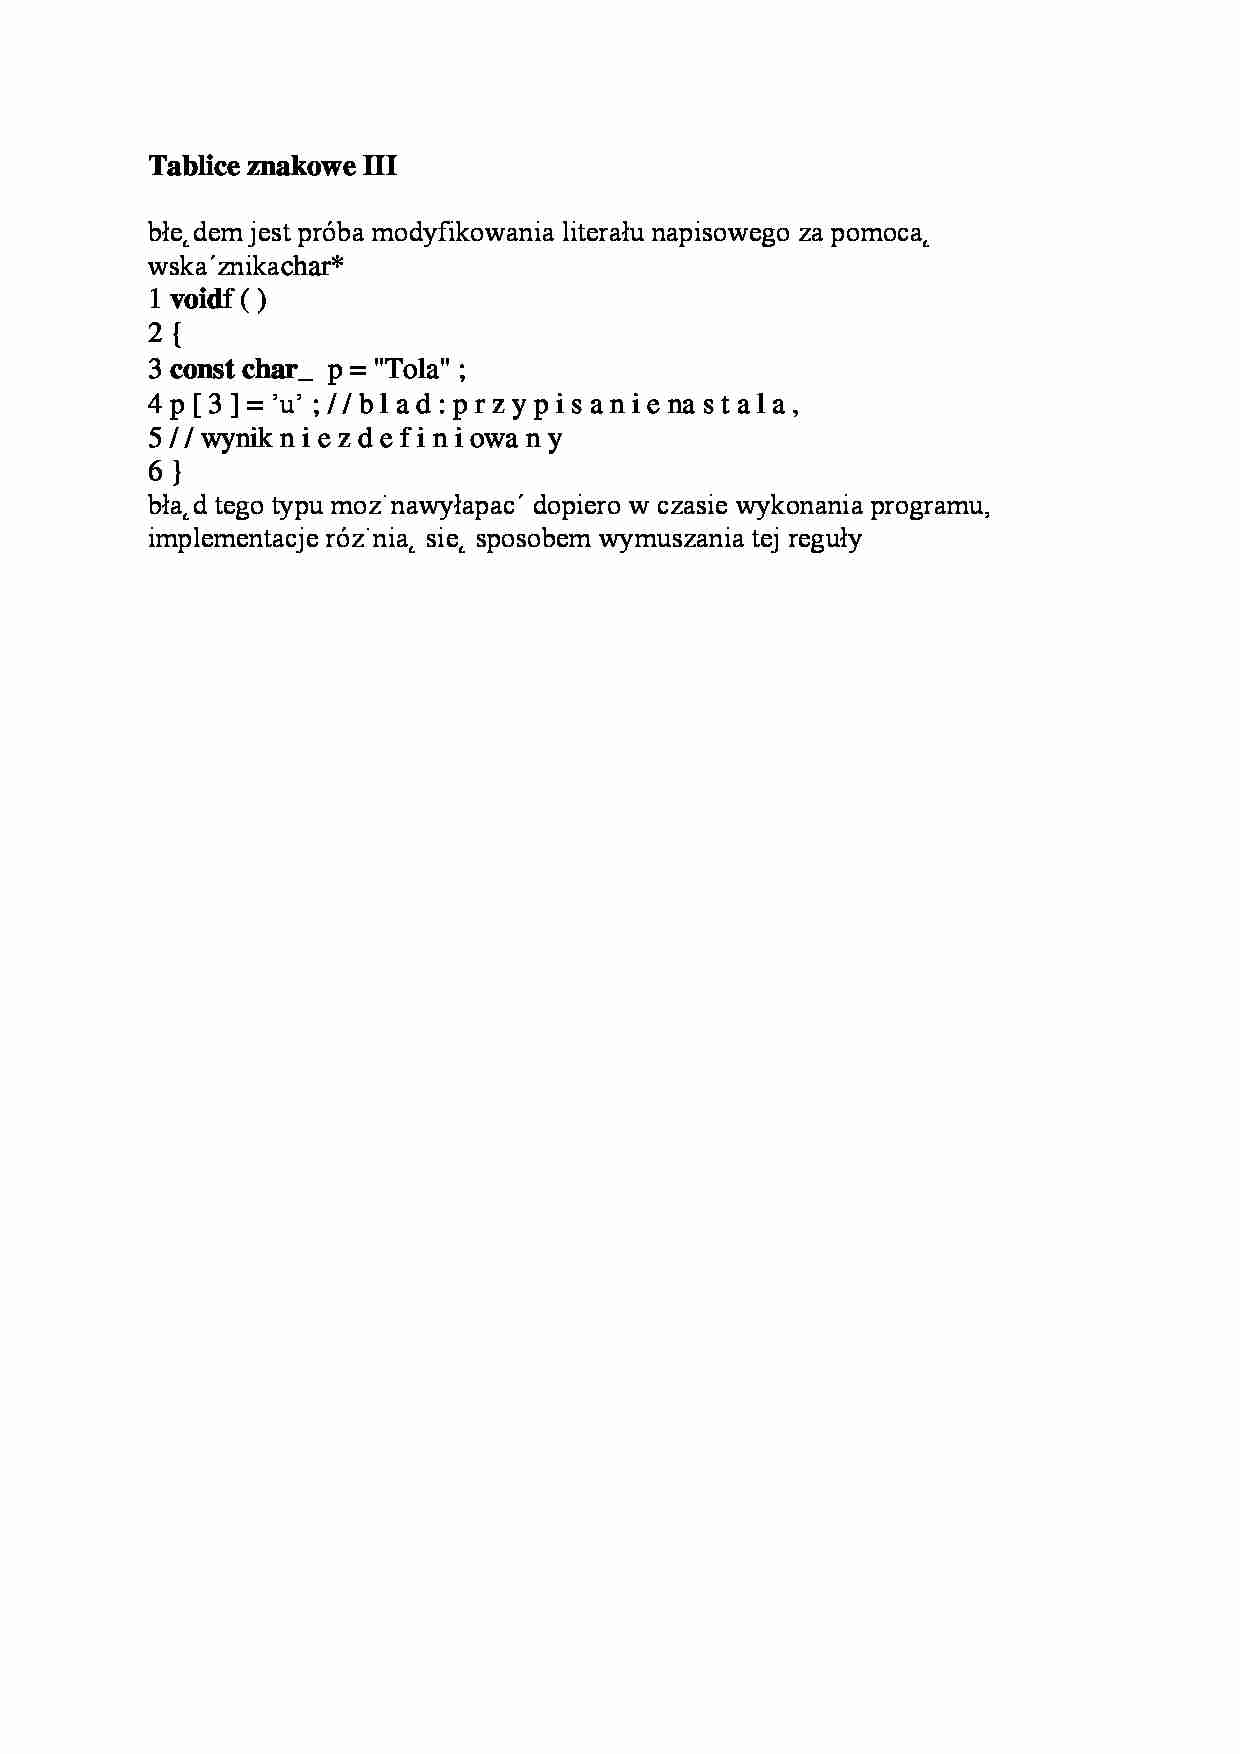 Tablice znakowe III-opracowanie - strona 1